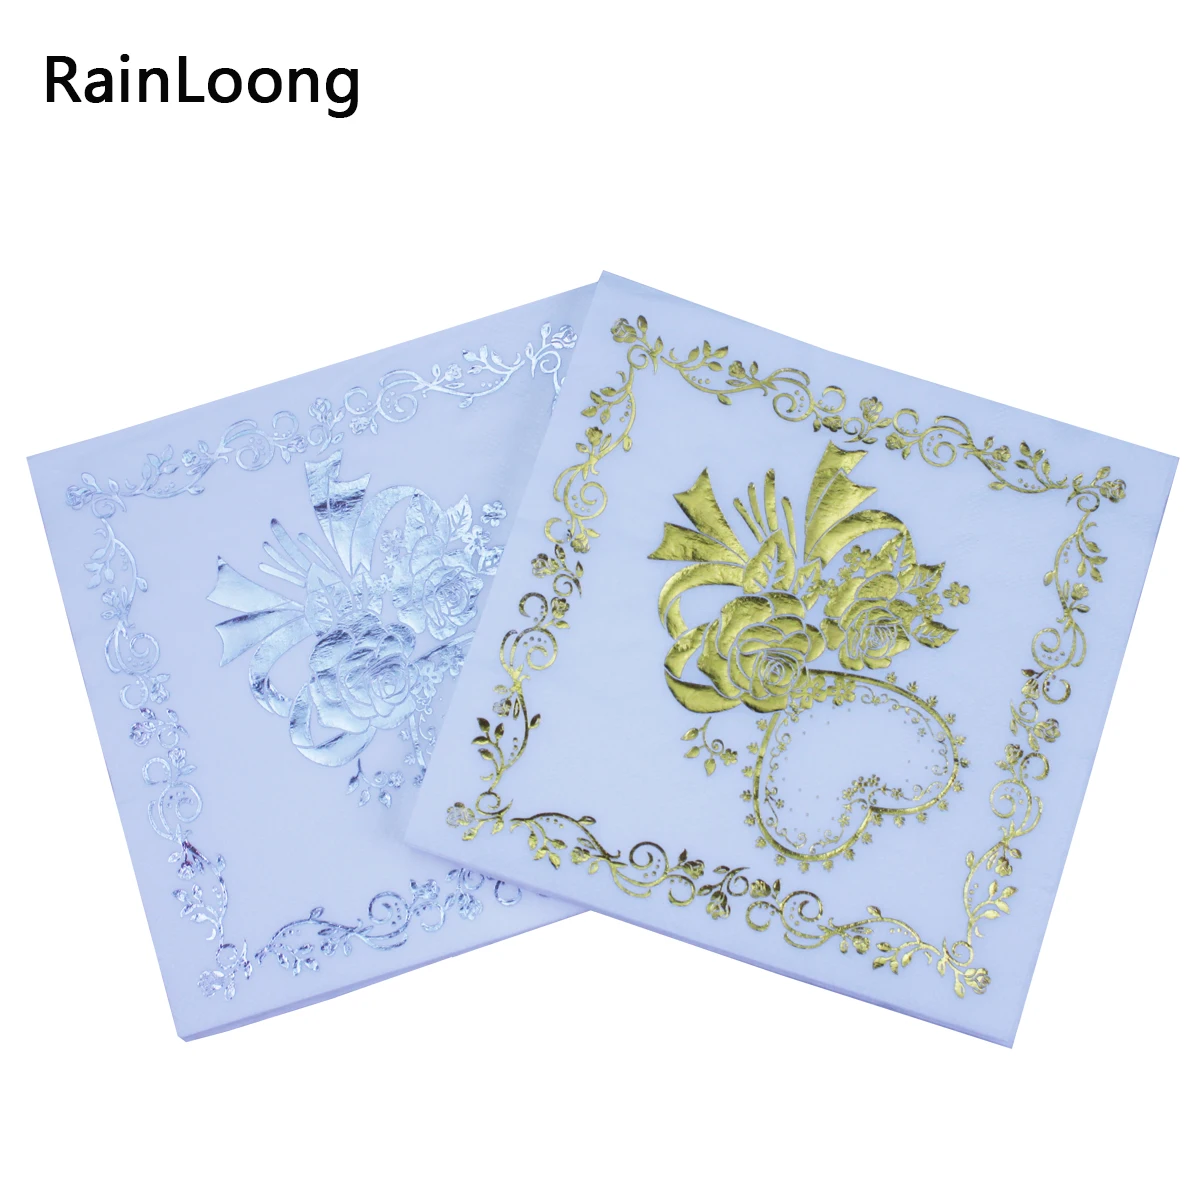 

[RainLoong] Flower Print Gold Silver Foil Paper Napkins Tissue Serviettes For Party Decoration 33*33cm 2 Plys